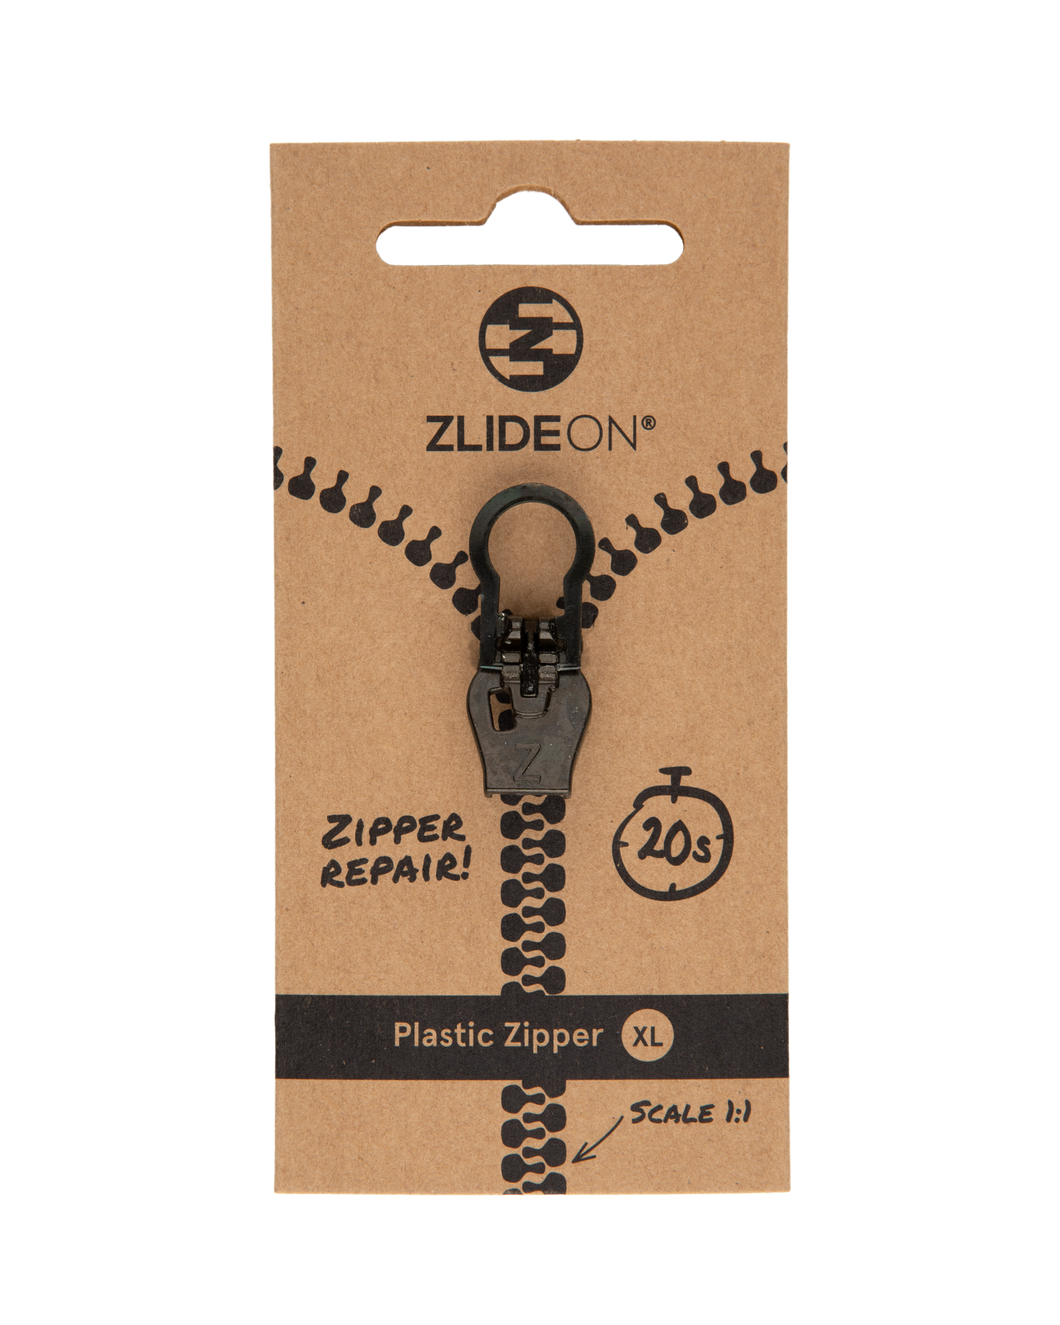 Metal & Plastic Zipper XL